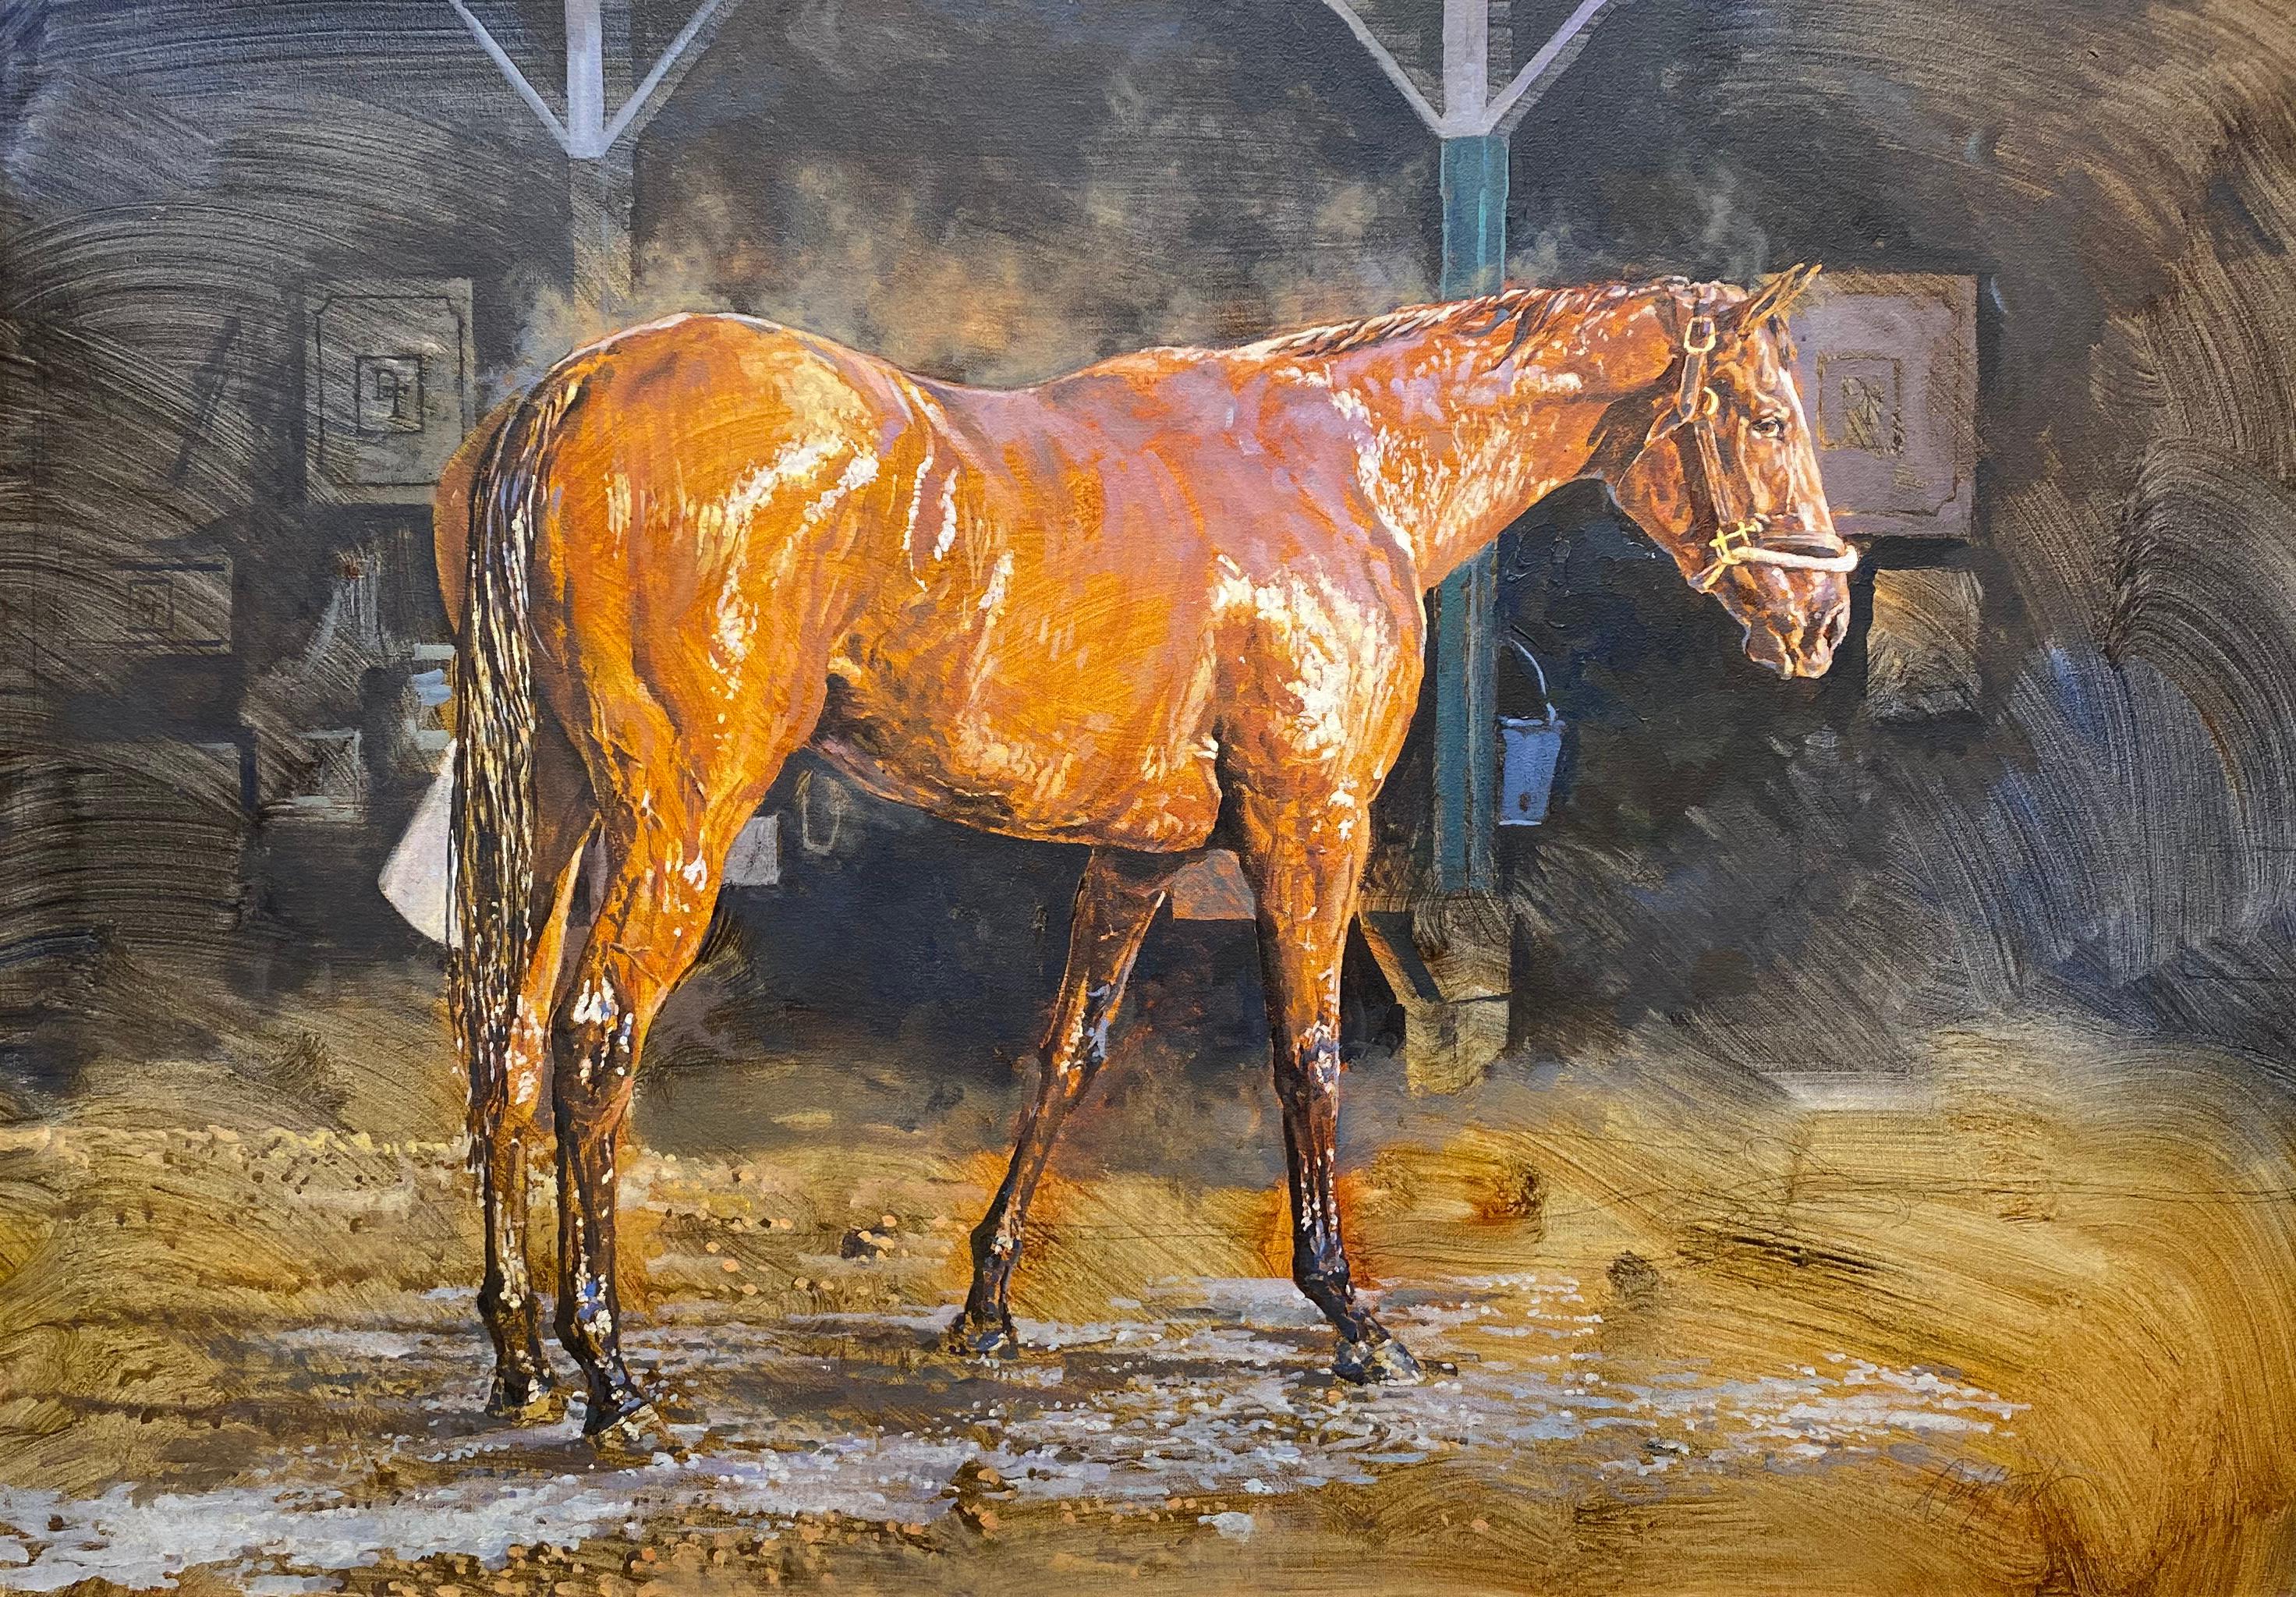 Dieses realistische Pferdebild "After the Bath" des Künstlers Dahl Taylor ist ein 24x34 großes Ölgemälde auf Leinwand, das ein braunes Pferd nach dem Bad zeigt, dessen Fell im warmen Sonnenlicht glänzt. Im Hintergrund sind Ställe zu sehen. Dies ist